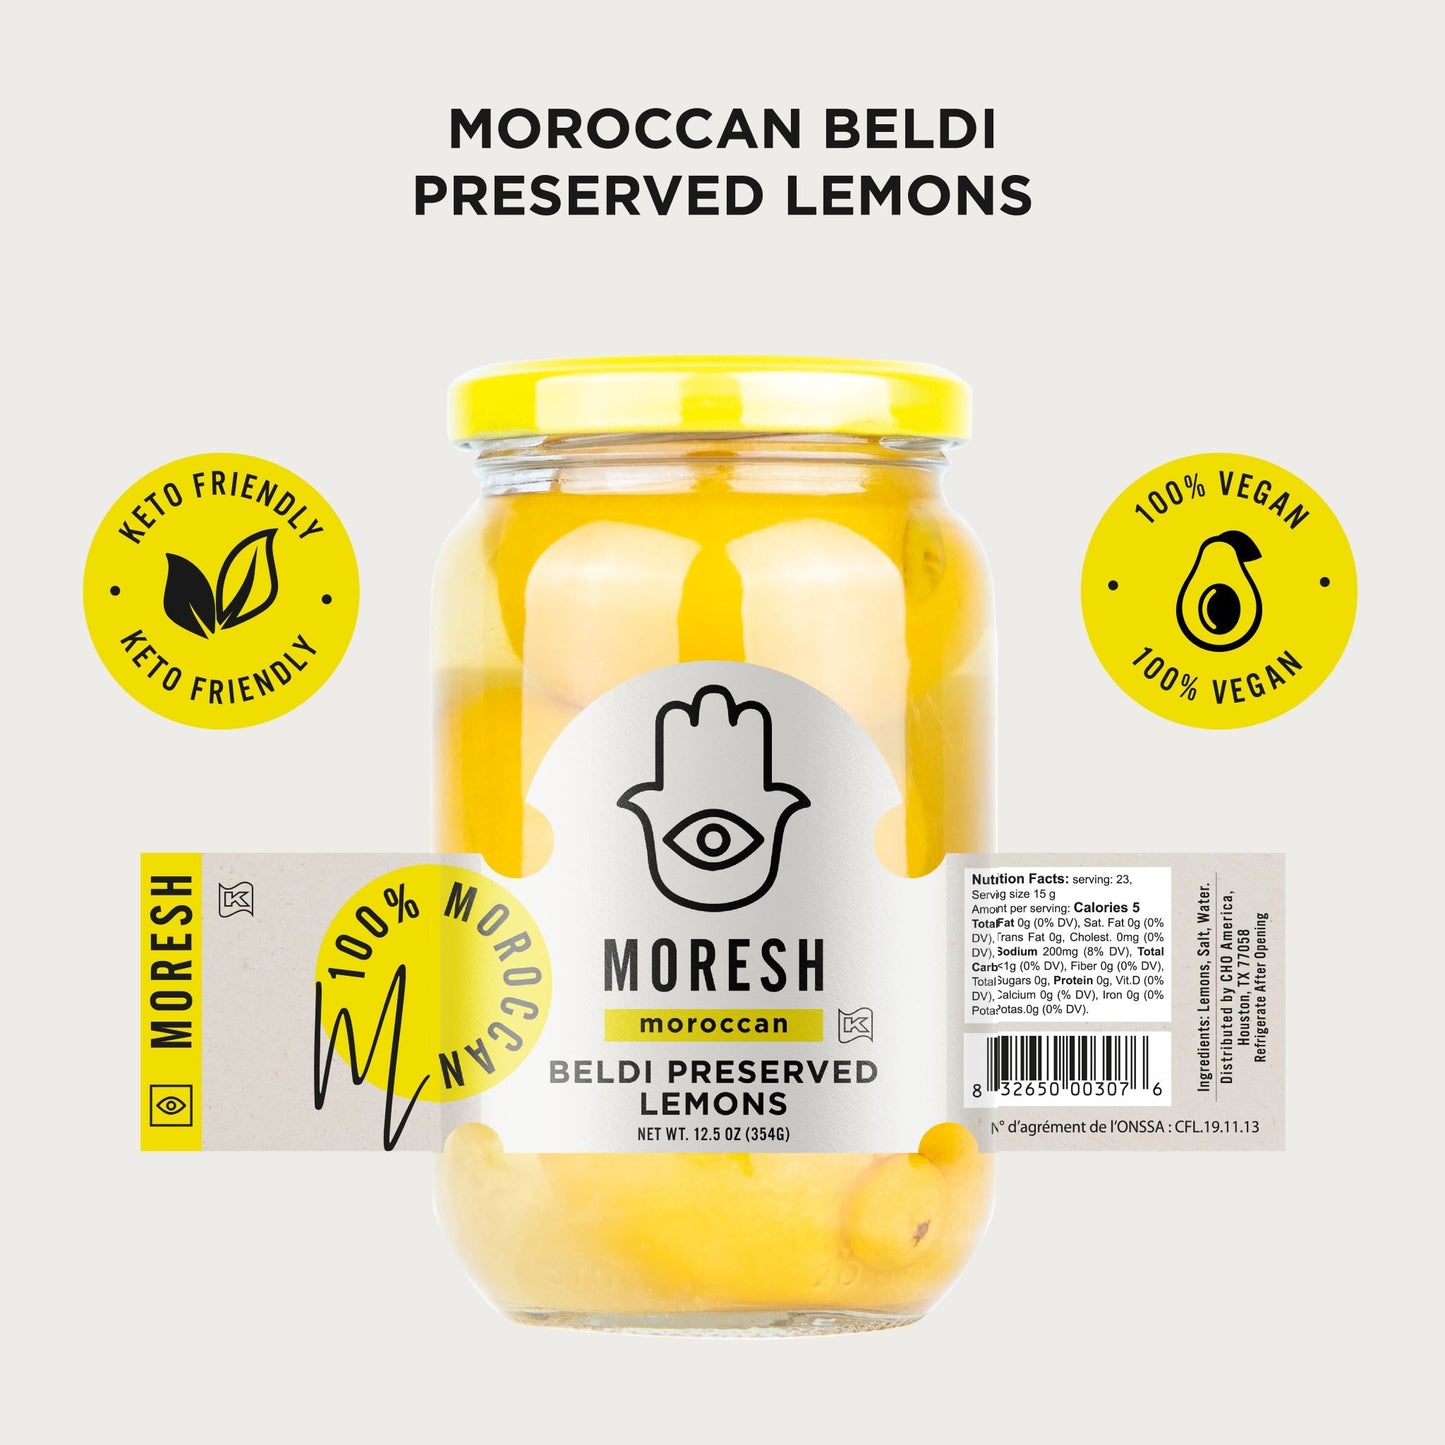 
                  
                    Moresh Preserved Beldi Lemon
                  
                